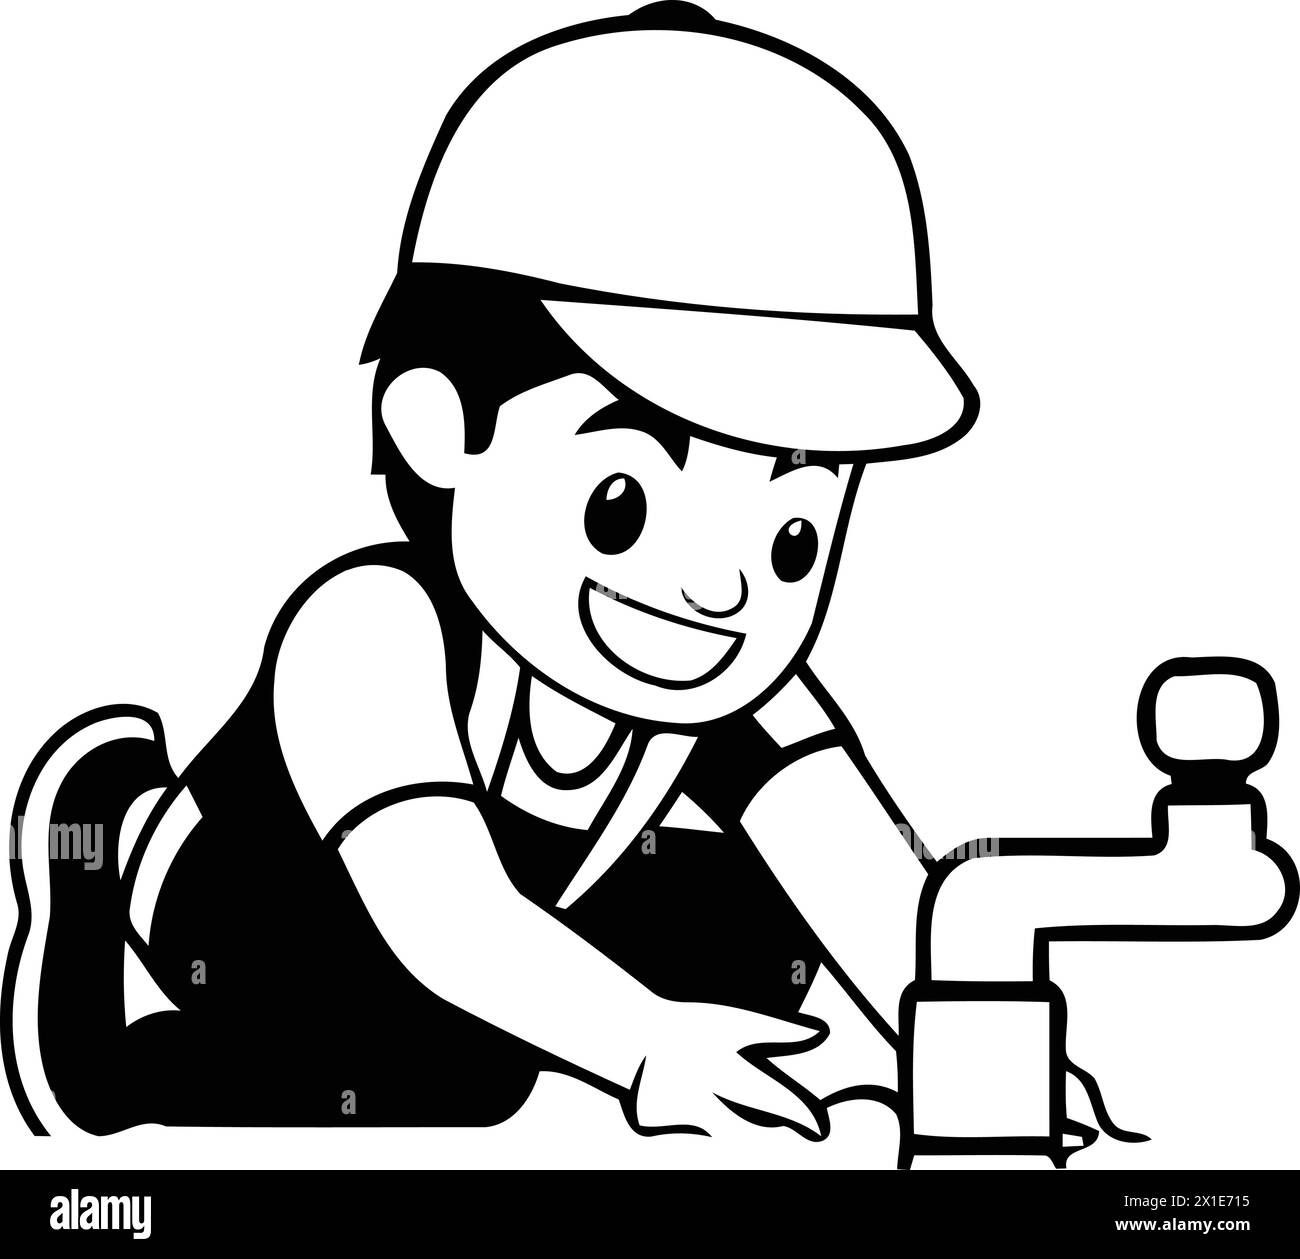 Rubinetto dell'acqua di riparazione idraulico. Illustrazione vettoriale in stile cartone animato piatto. Illustrazione Vettoriale